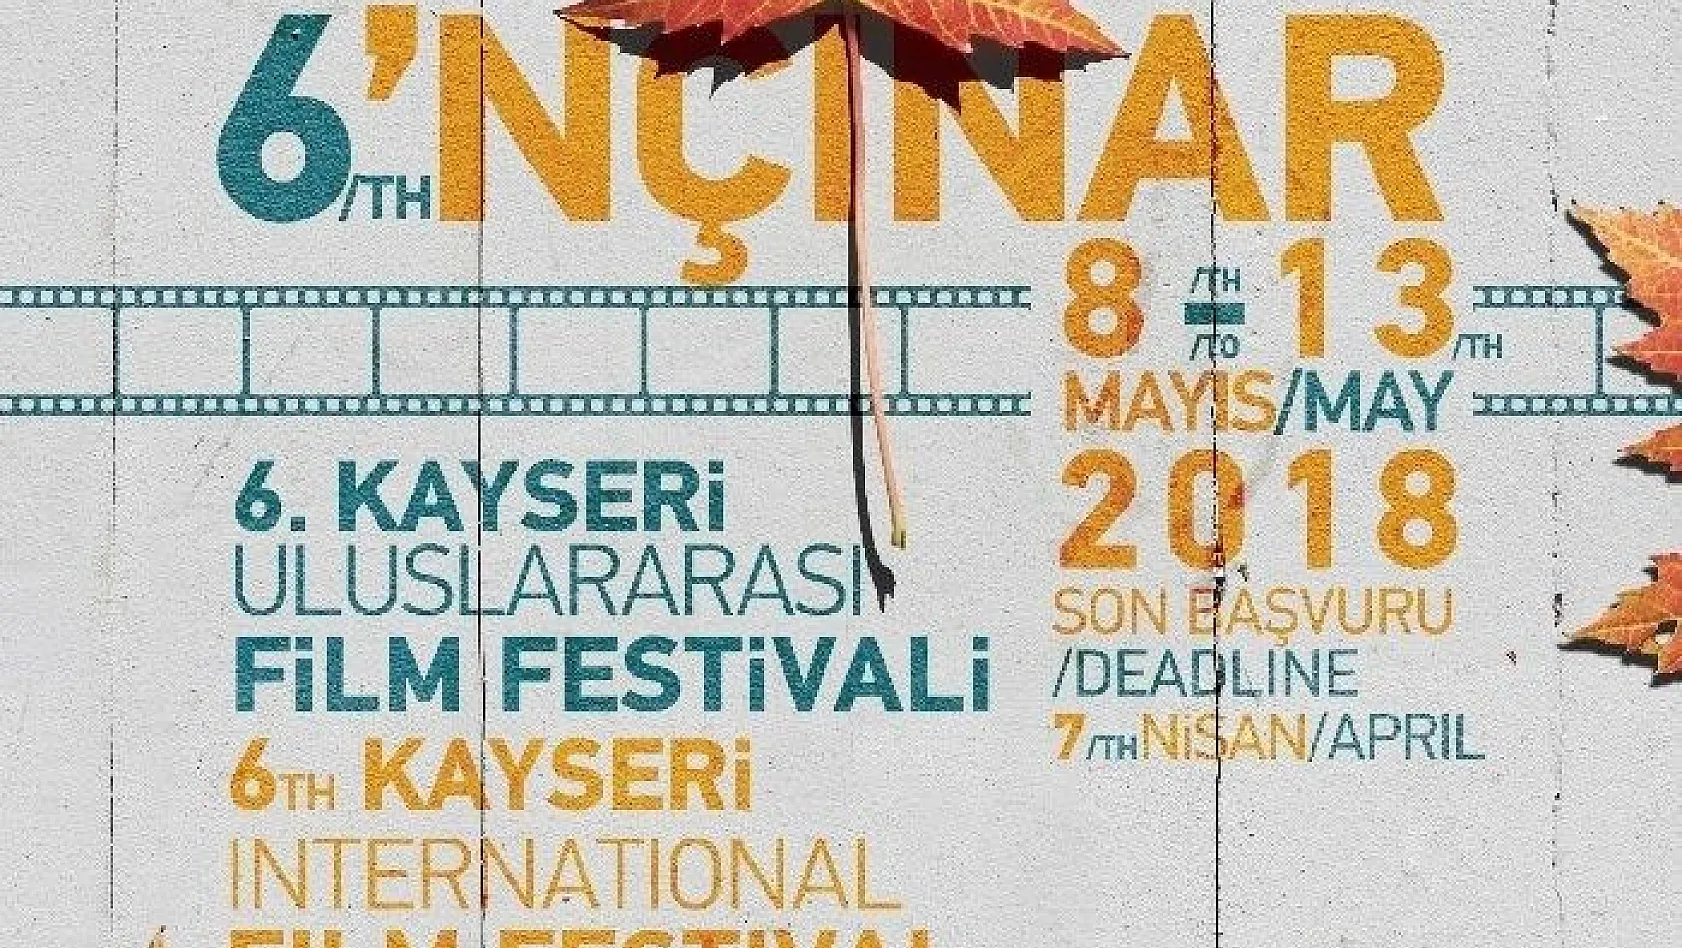 6. Kayseri Uluslararası Film Festivali 8 - 13 Mayıs tarihlerinde yapılacak
